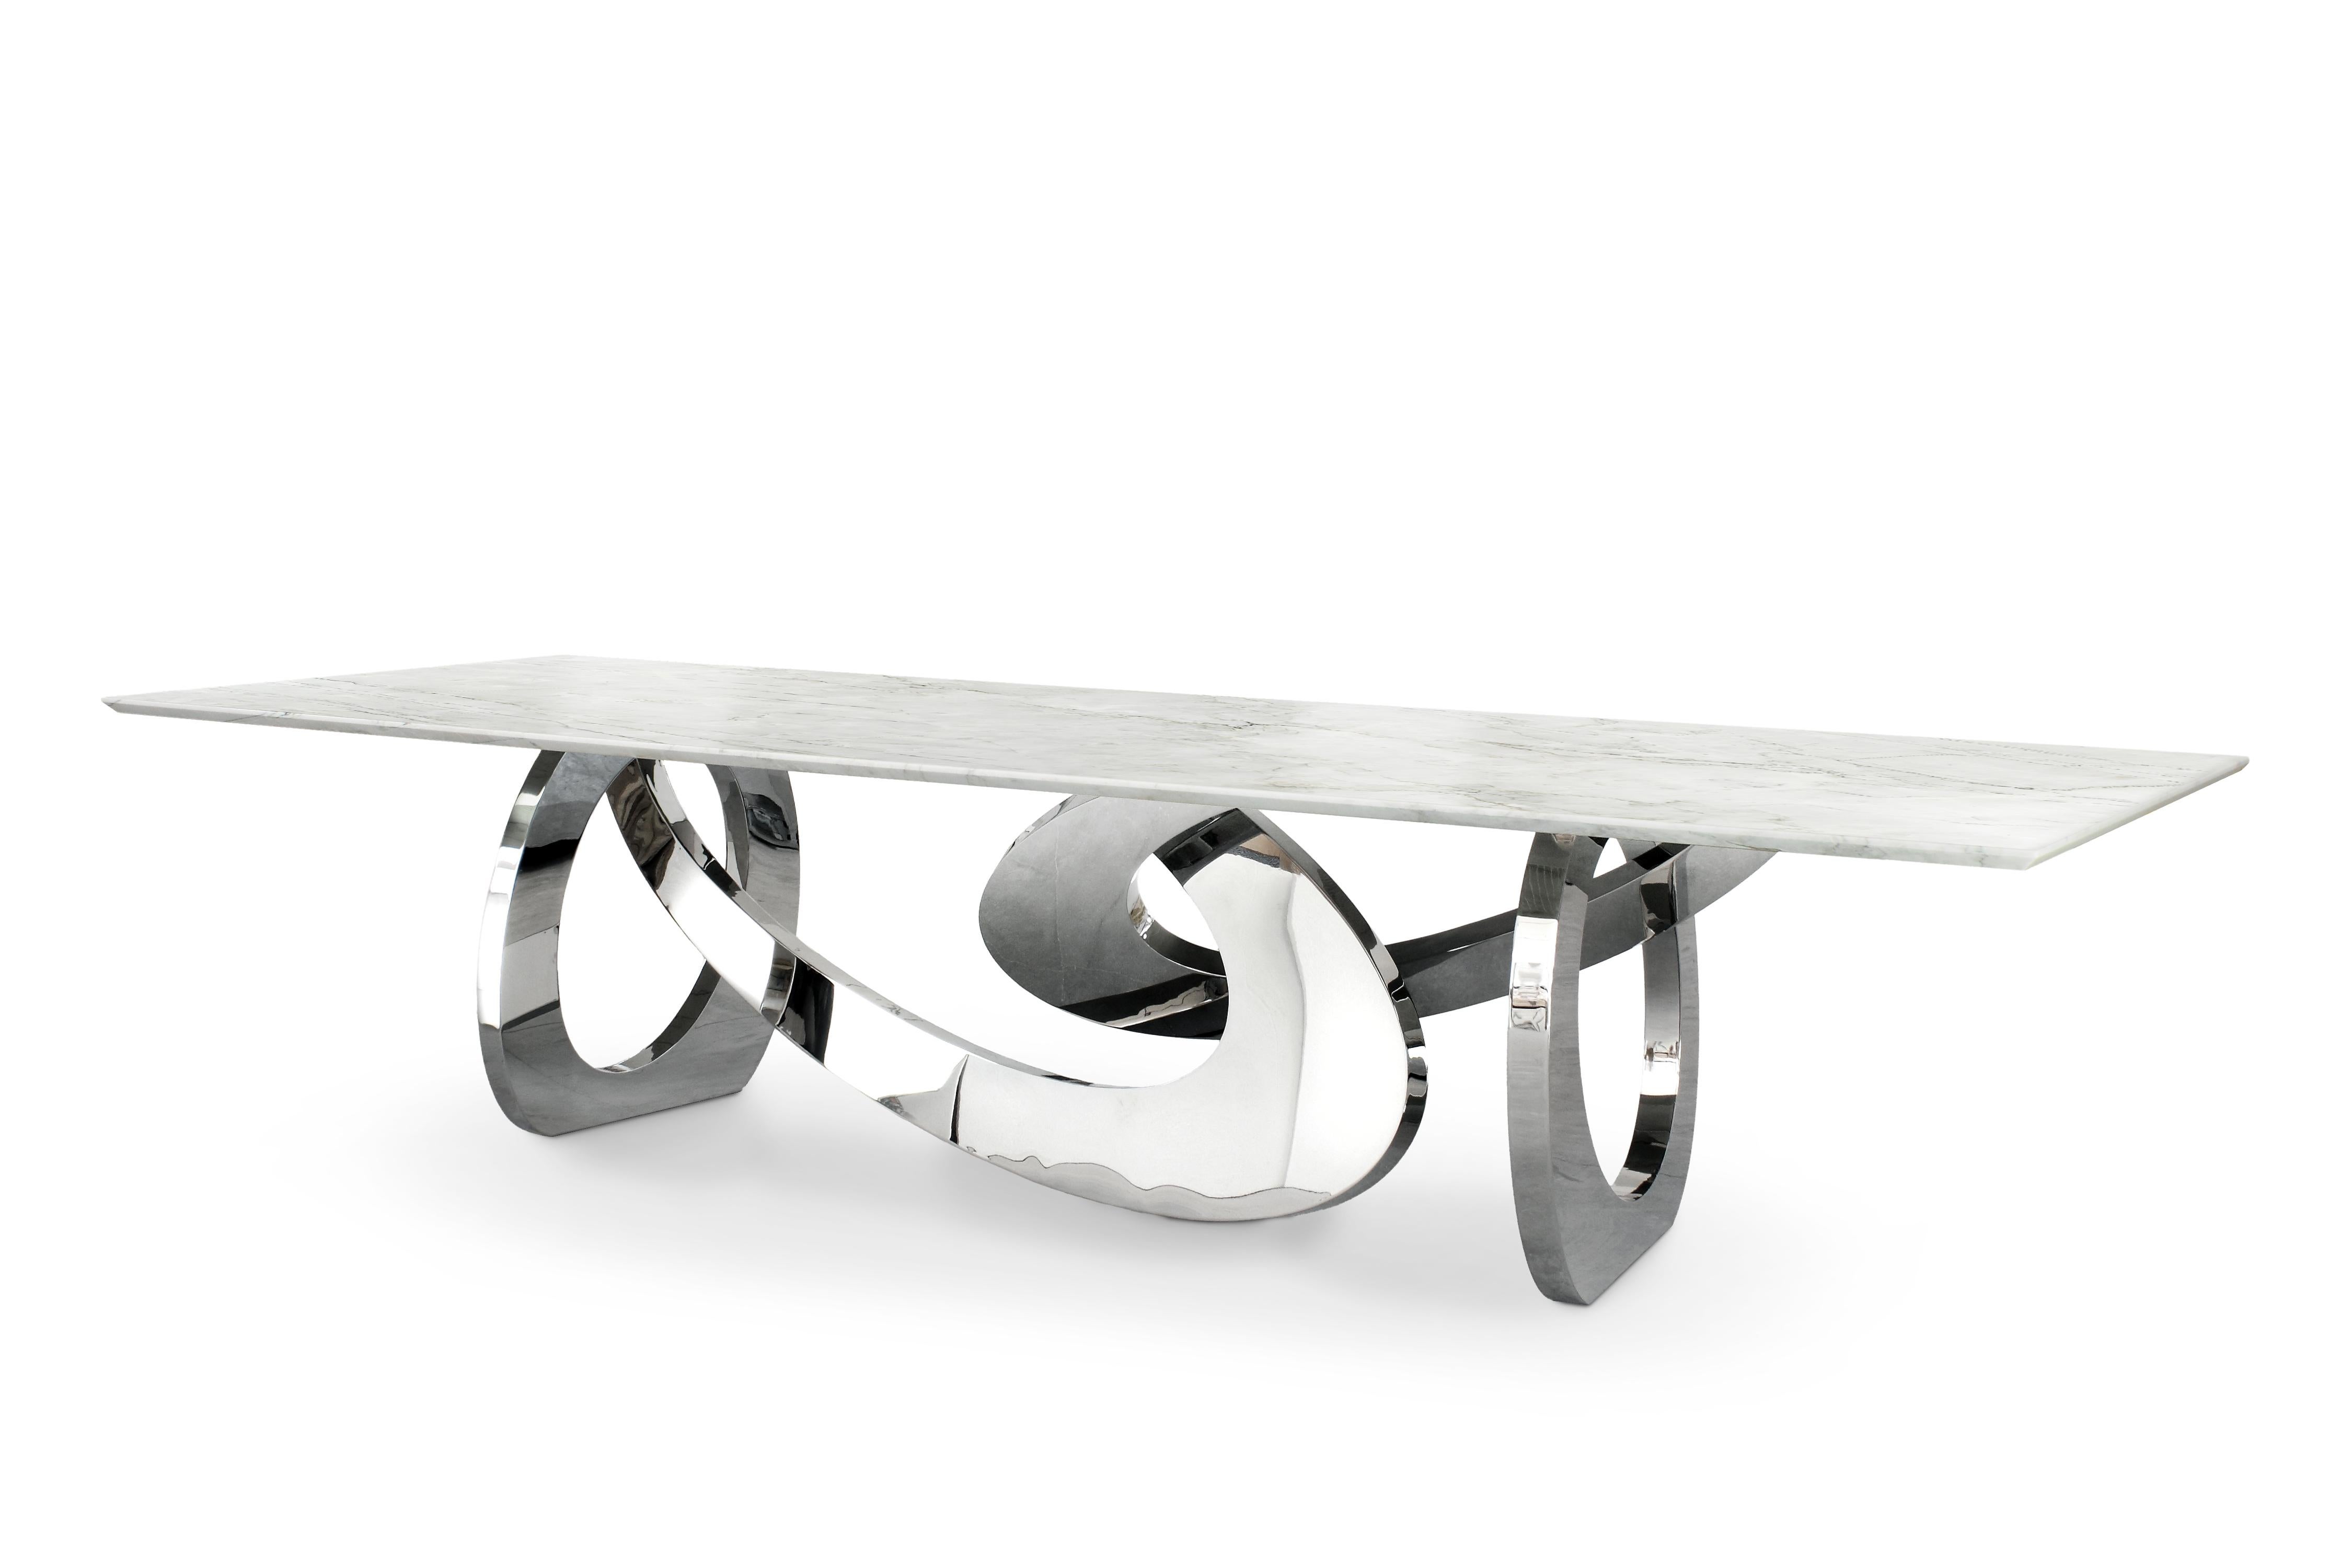 Der Tisch 'Bangles Stone' ist ein bedeutender skulpturaler Esstisch mit einer Struktur aus hochglanzpoliertem Edelstahl und einer Platte aus Tahiti-Quarzit (Herkunft: Brasilien). Jeder einzelne Armreif wird von Hand geschweißt und hochglanzpoliert.